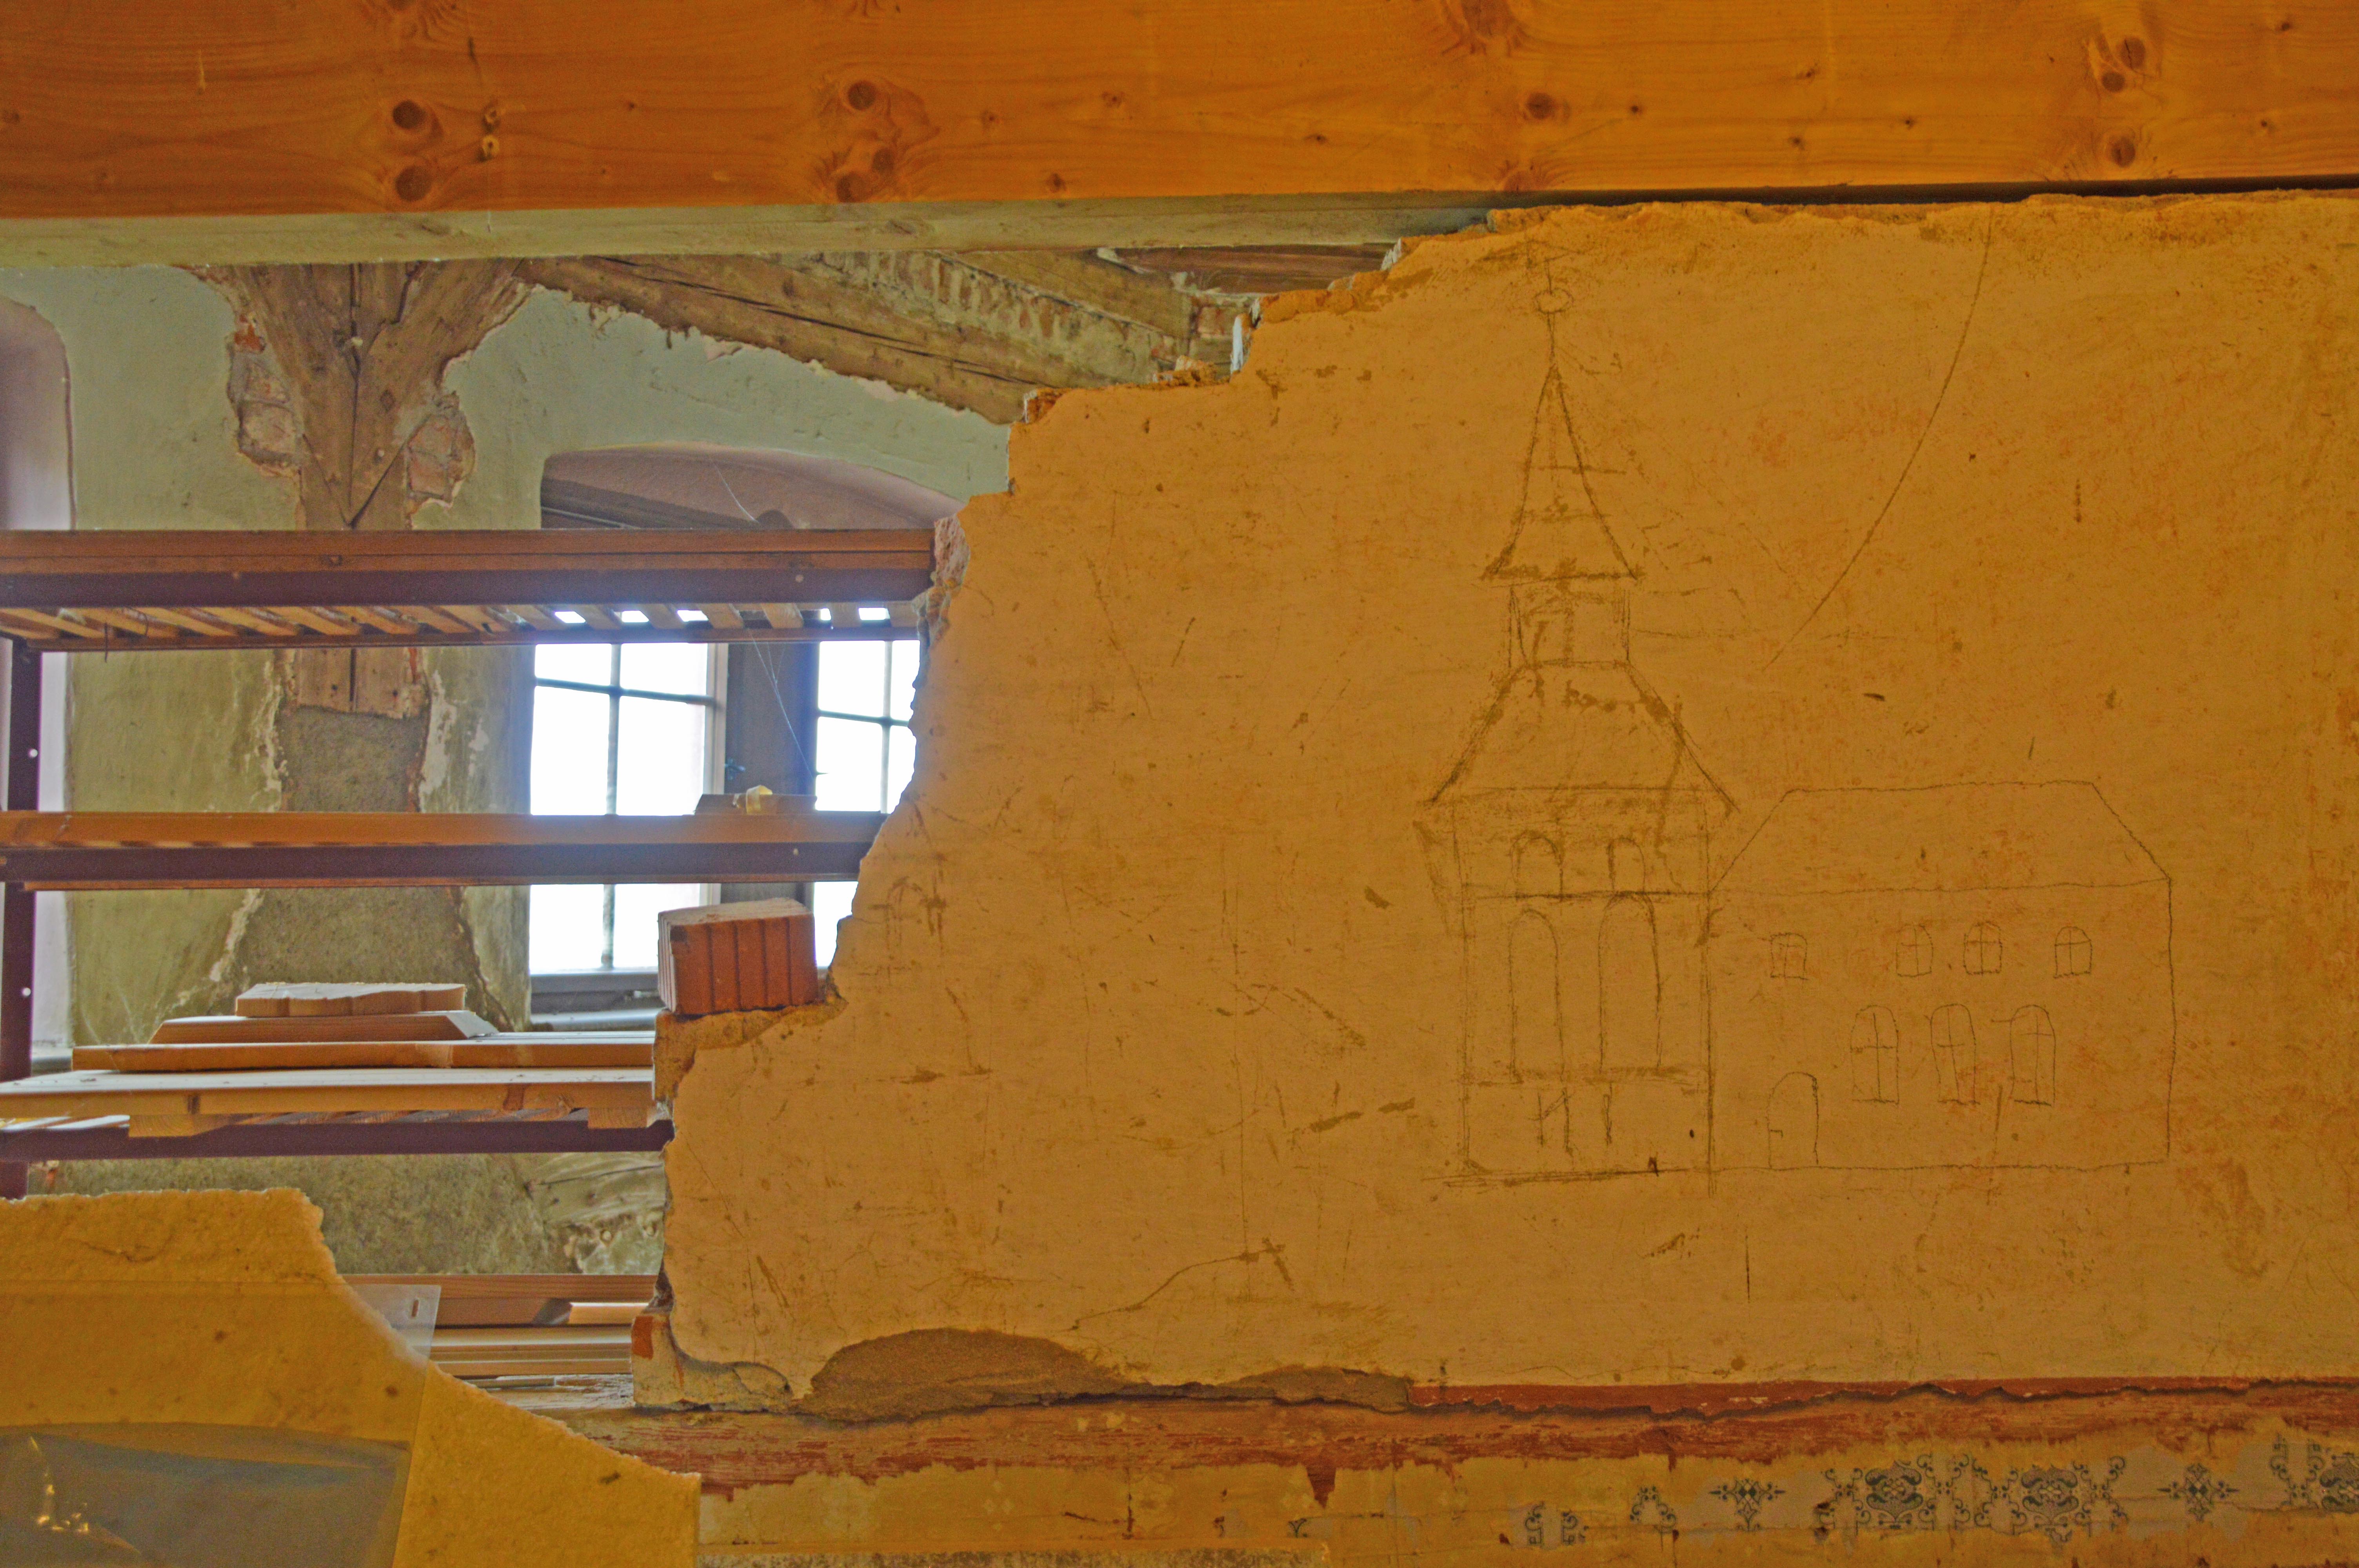 Foto einer halb abgerissenen Innenwand, die den Blick freigibt auf dahinterliegende Räumlichkeiten im Dachboden von Schloss Rochsburg.